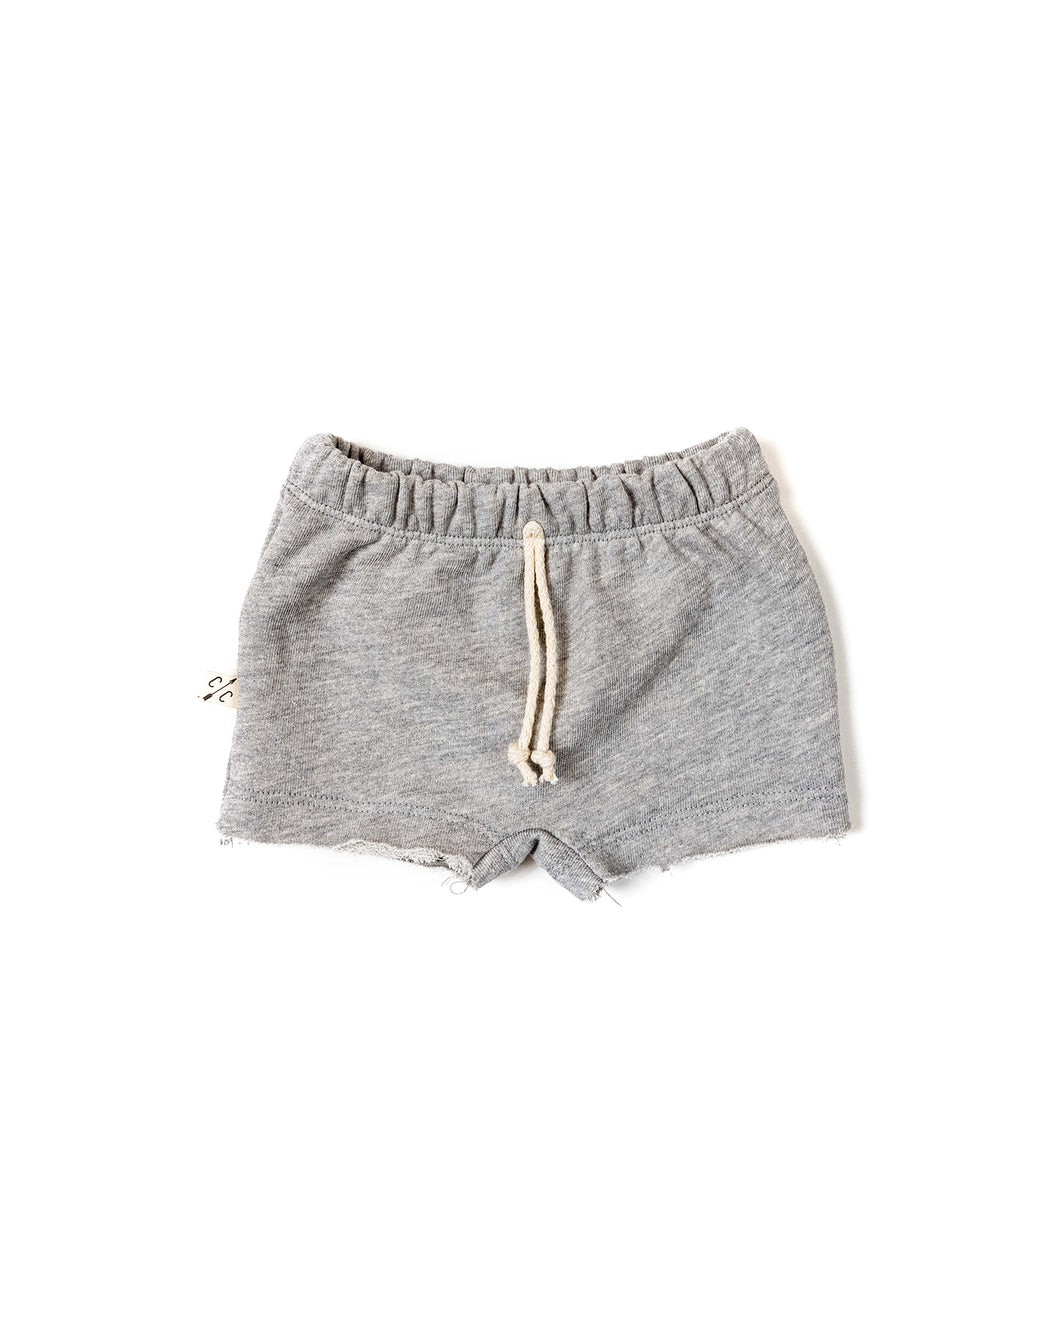 boy shorts - medium gray